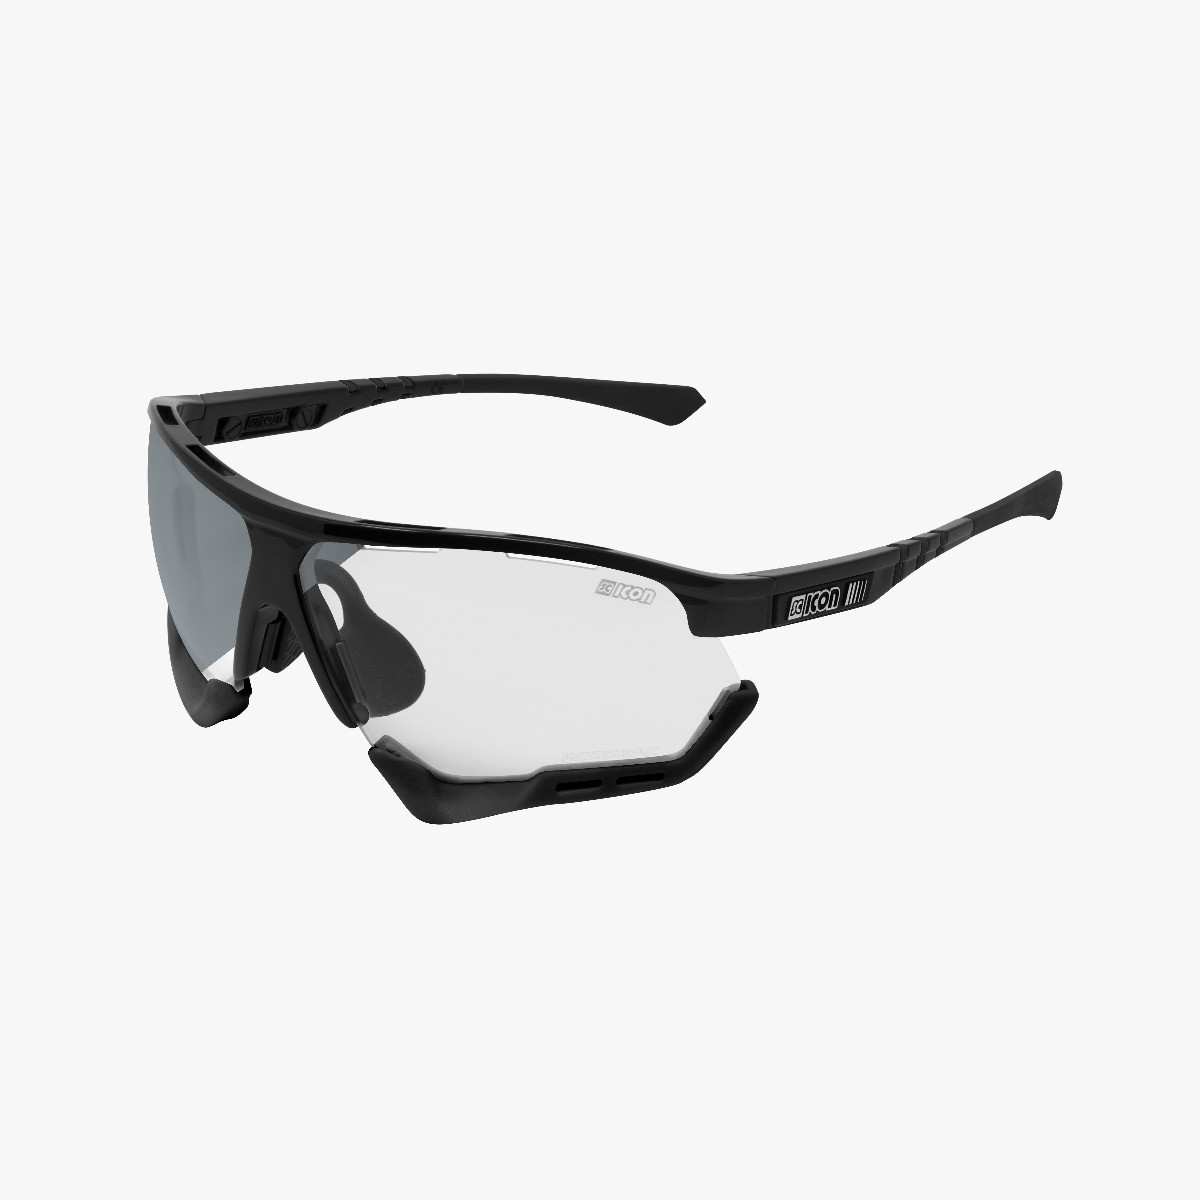 Occhiali Sportivi Occhiali Da Sole Occhiali bici Occhiali Nero Argento A Specchio M 17 